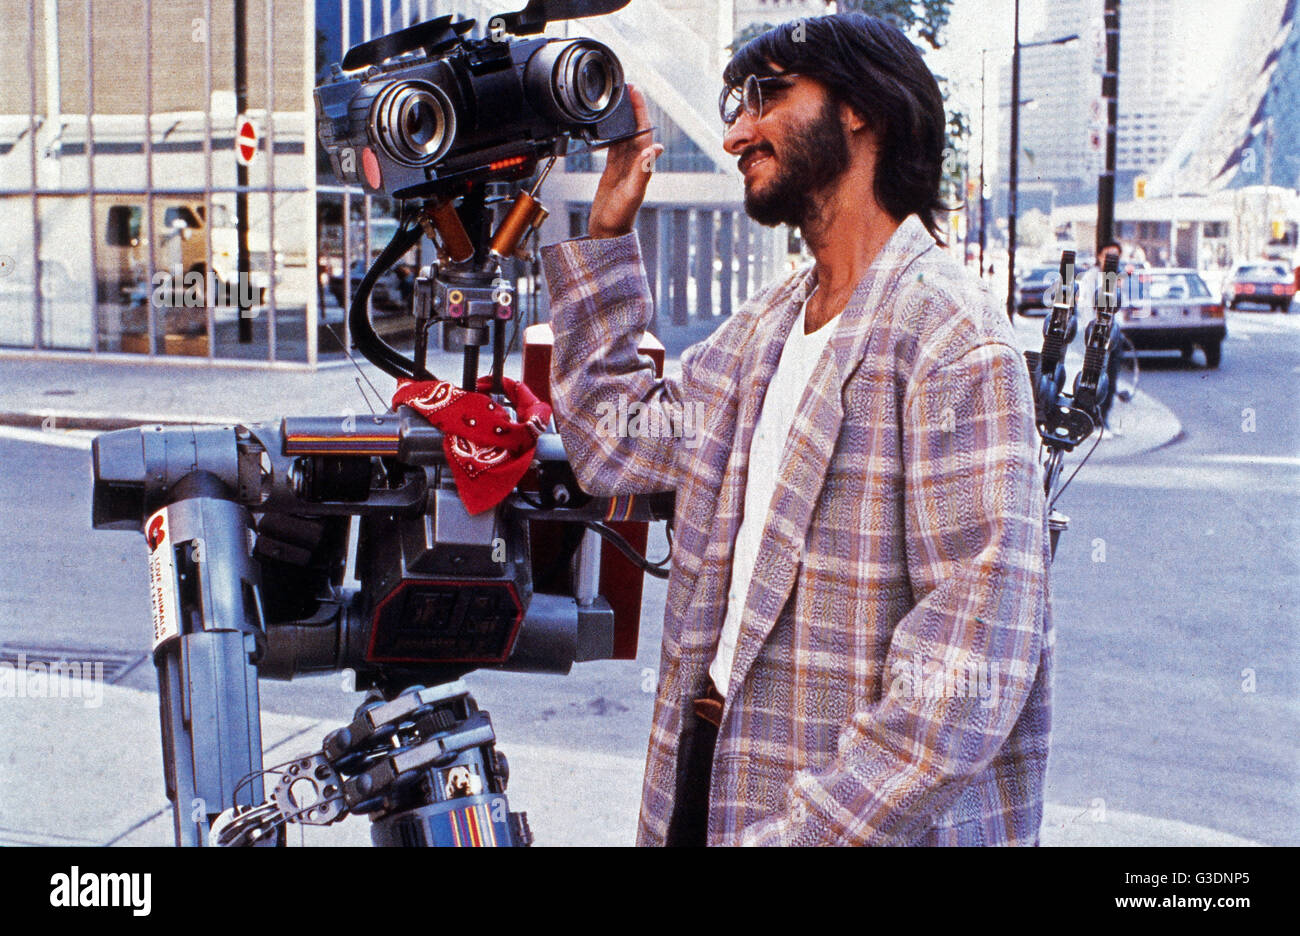 Short Circuit, aka: Nummer 5 lebt!, USA 1986, Regie: John Badham, Darsteller: Fisher Stevens Stock Photo